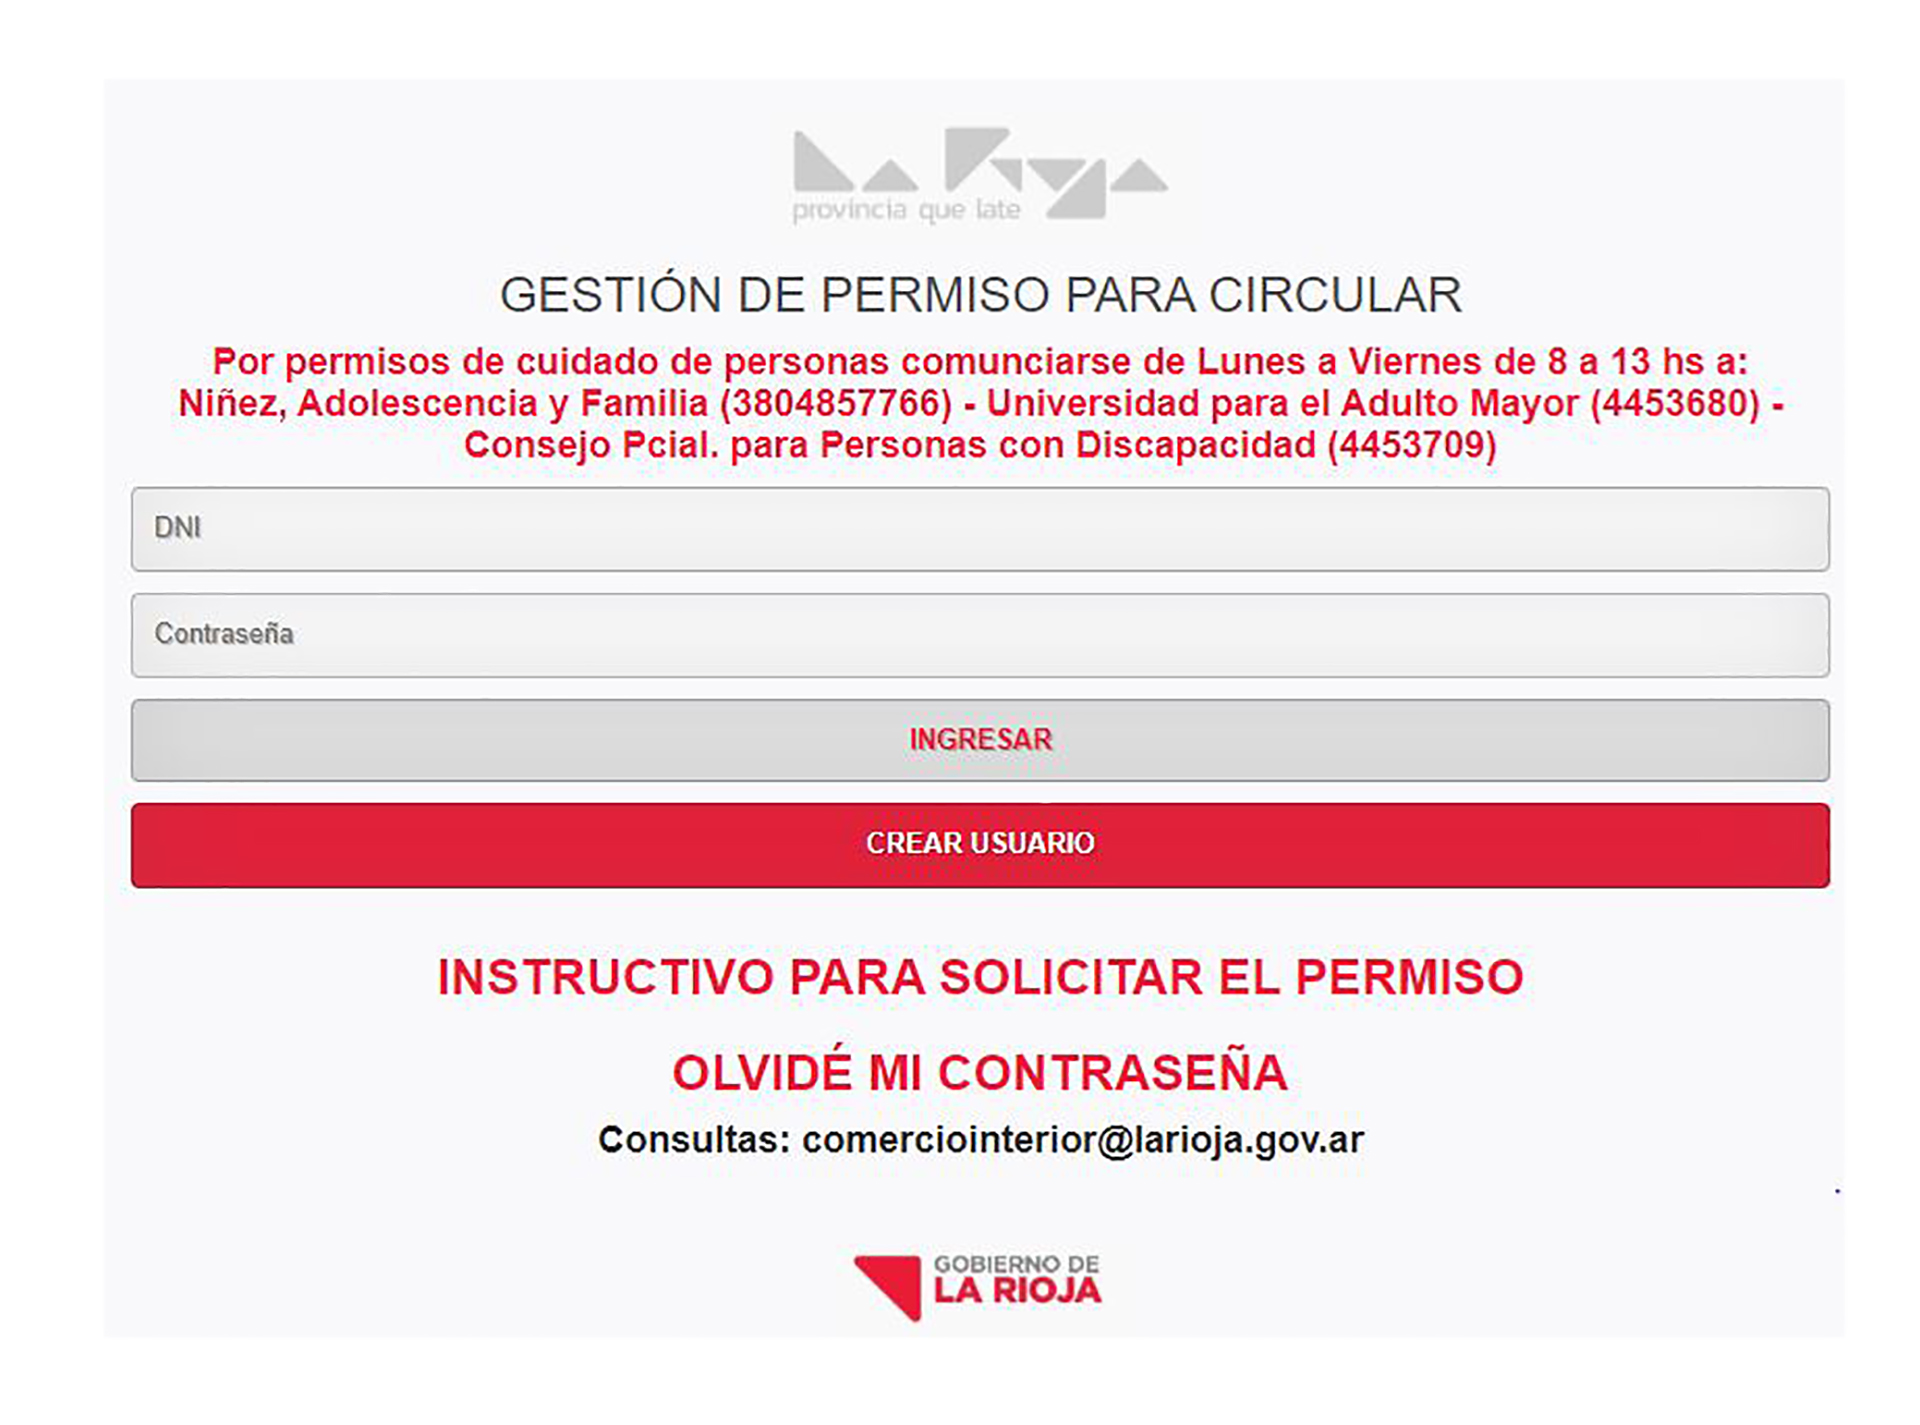 El sitio oficial para gestionar el permiso para circular en La Rioja